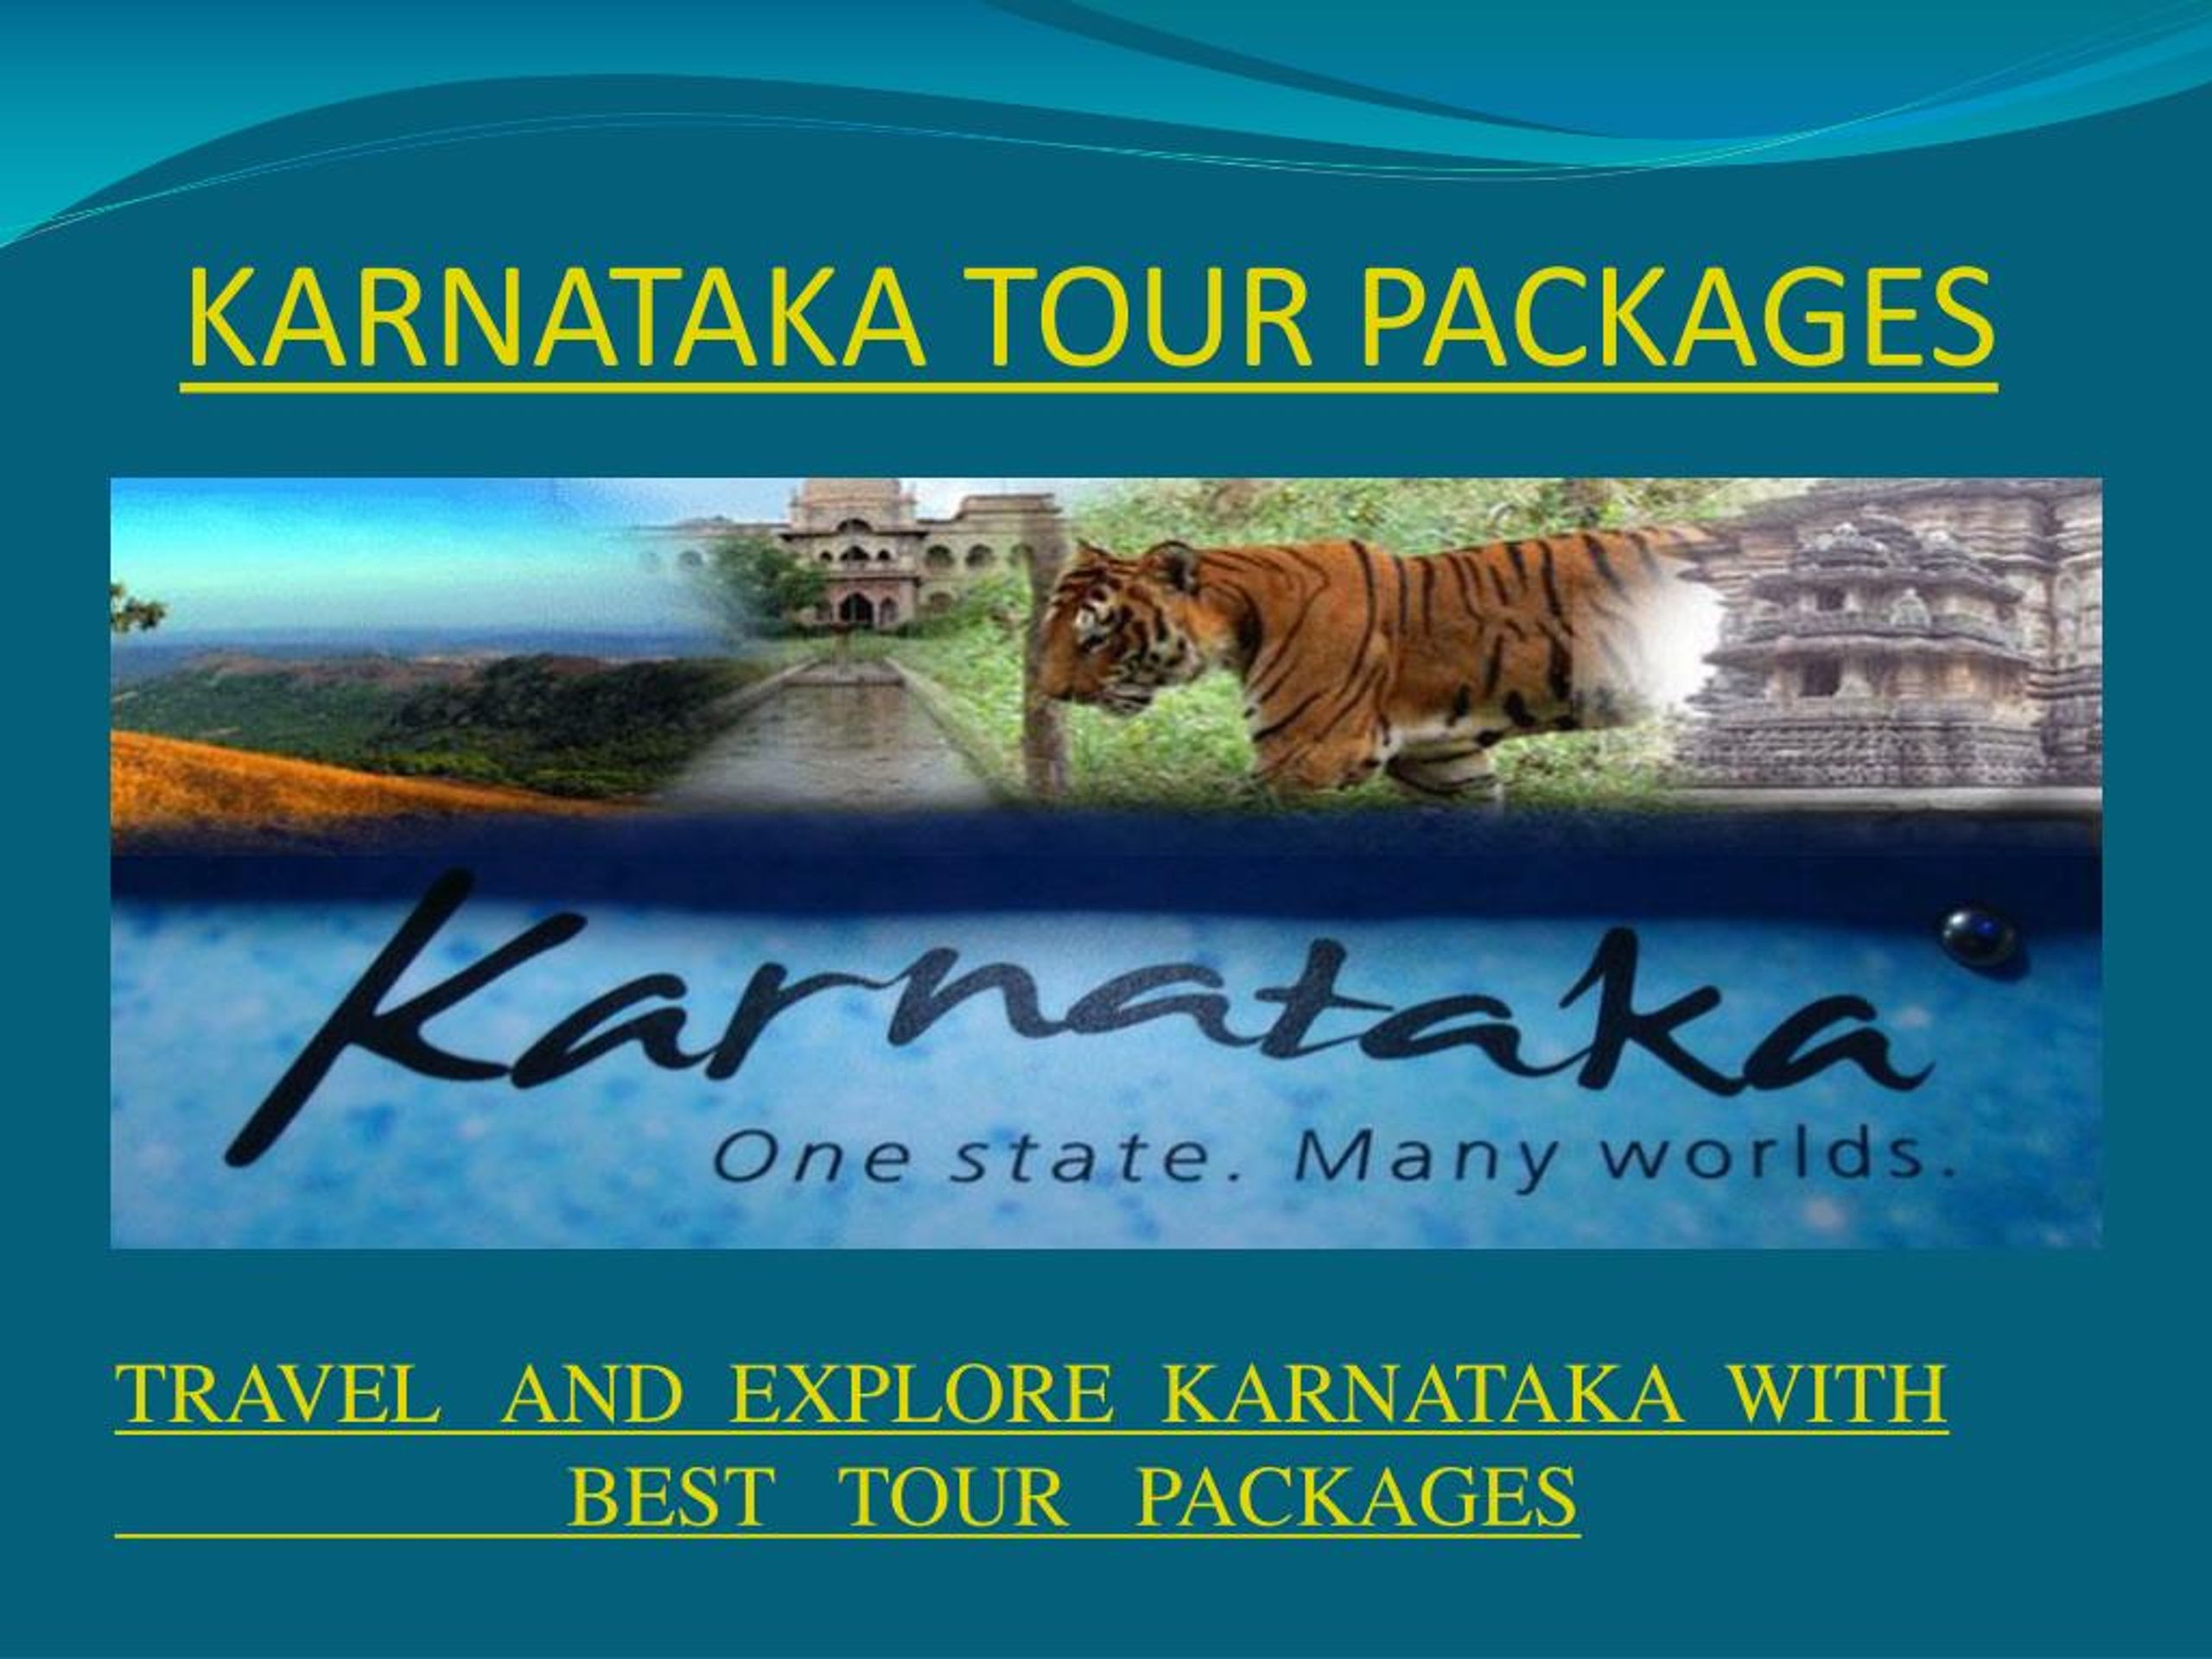 karnataka tourism department packages